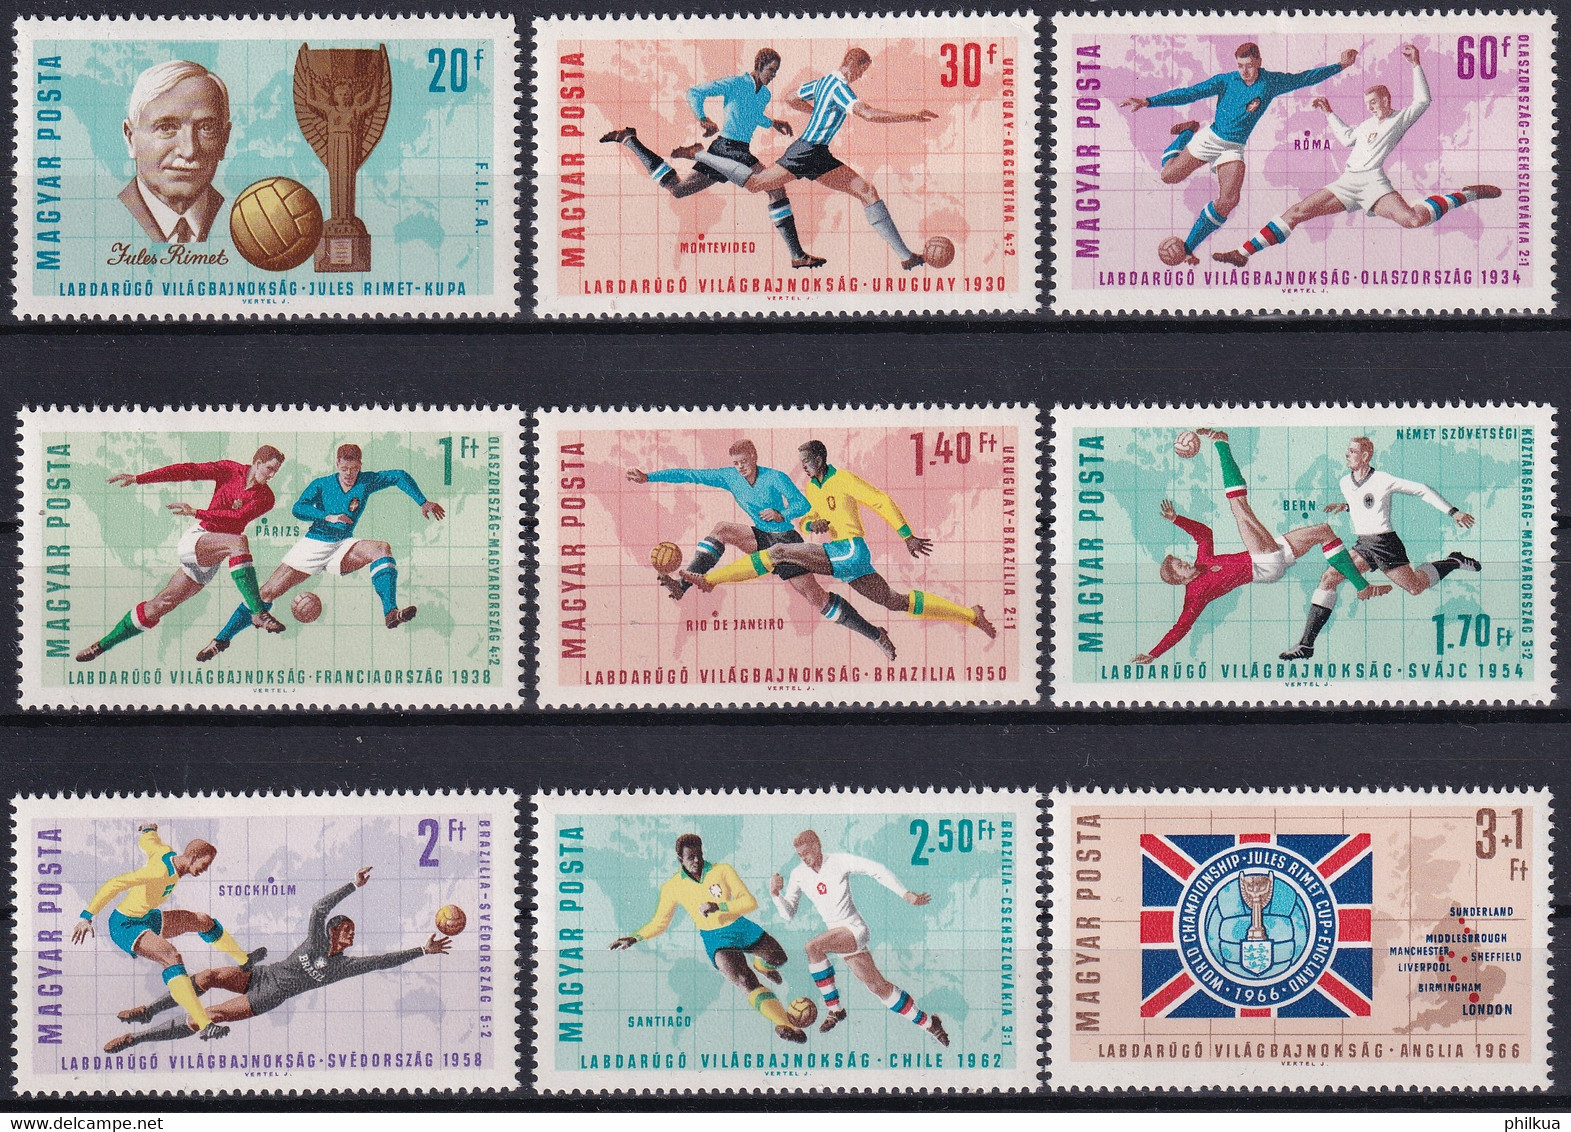 MiNr. 2242 - 2250 Ungarn 1966, 7. Juni. Fußball-Weltmeisterschaft, England  - Postfrisch/**/MNH - 1966 – England